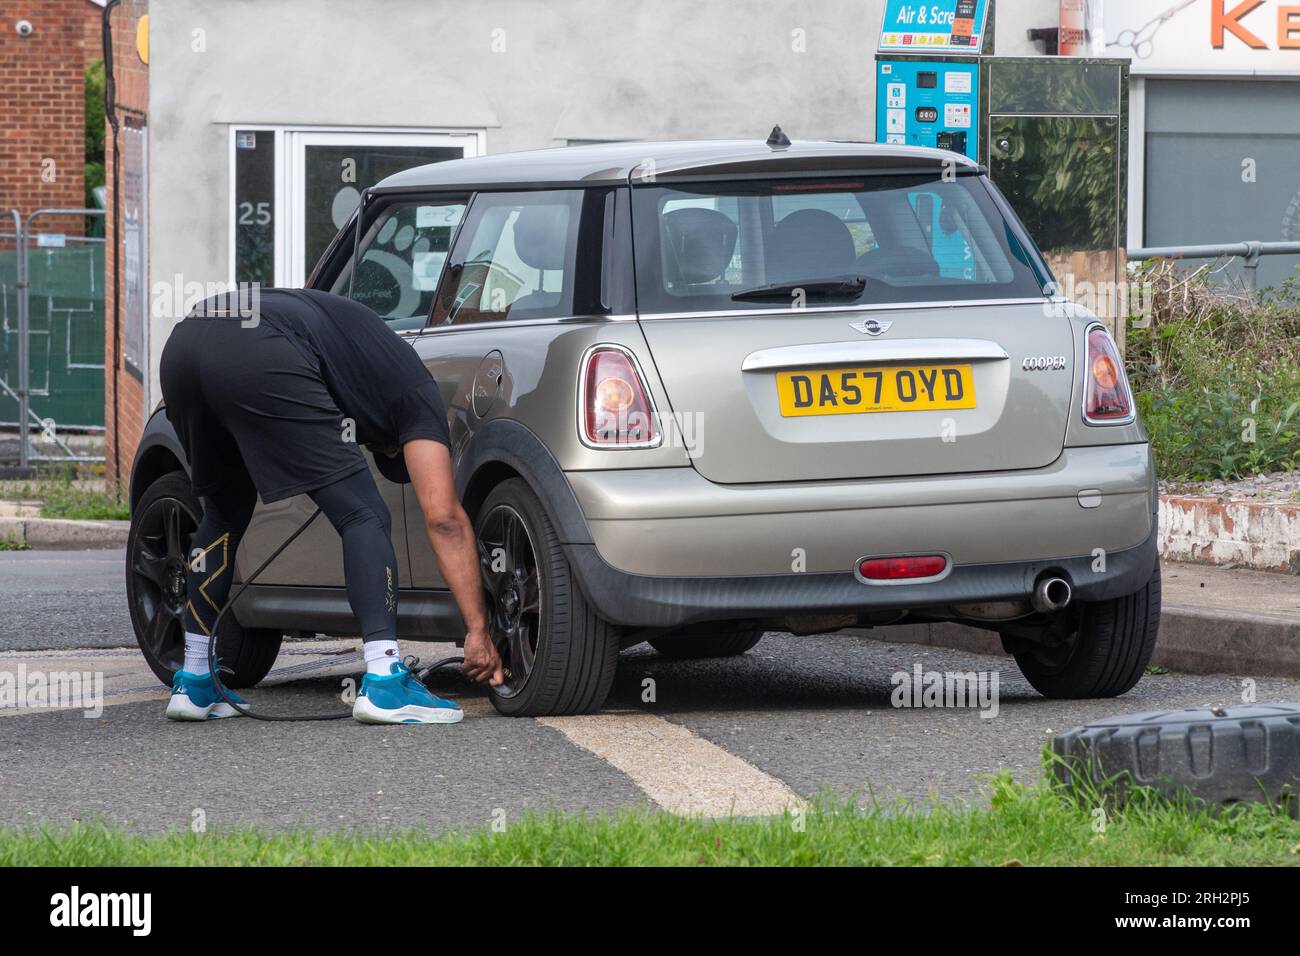 Uomo presso il distributore di benzina di garage che gonfia gli pneumatici su una mini auto utilizzando una pompa di gonfiaggio pneumatici, Inghilterra, Regno Unito Foto Stock